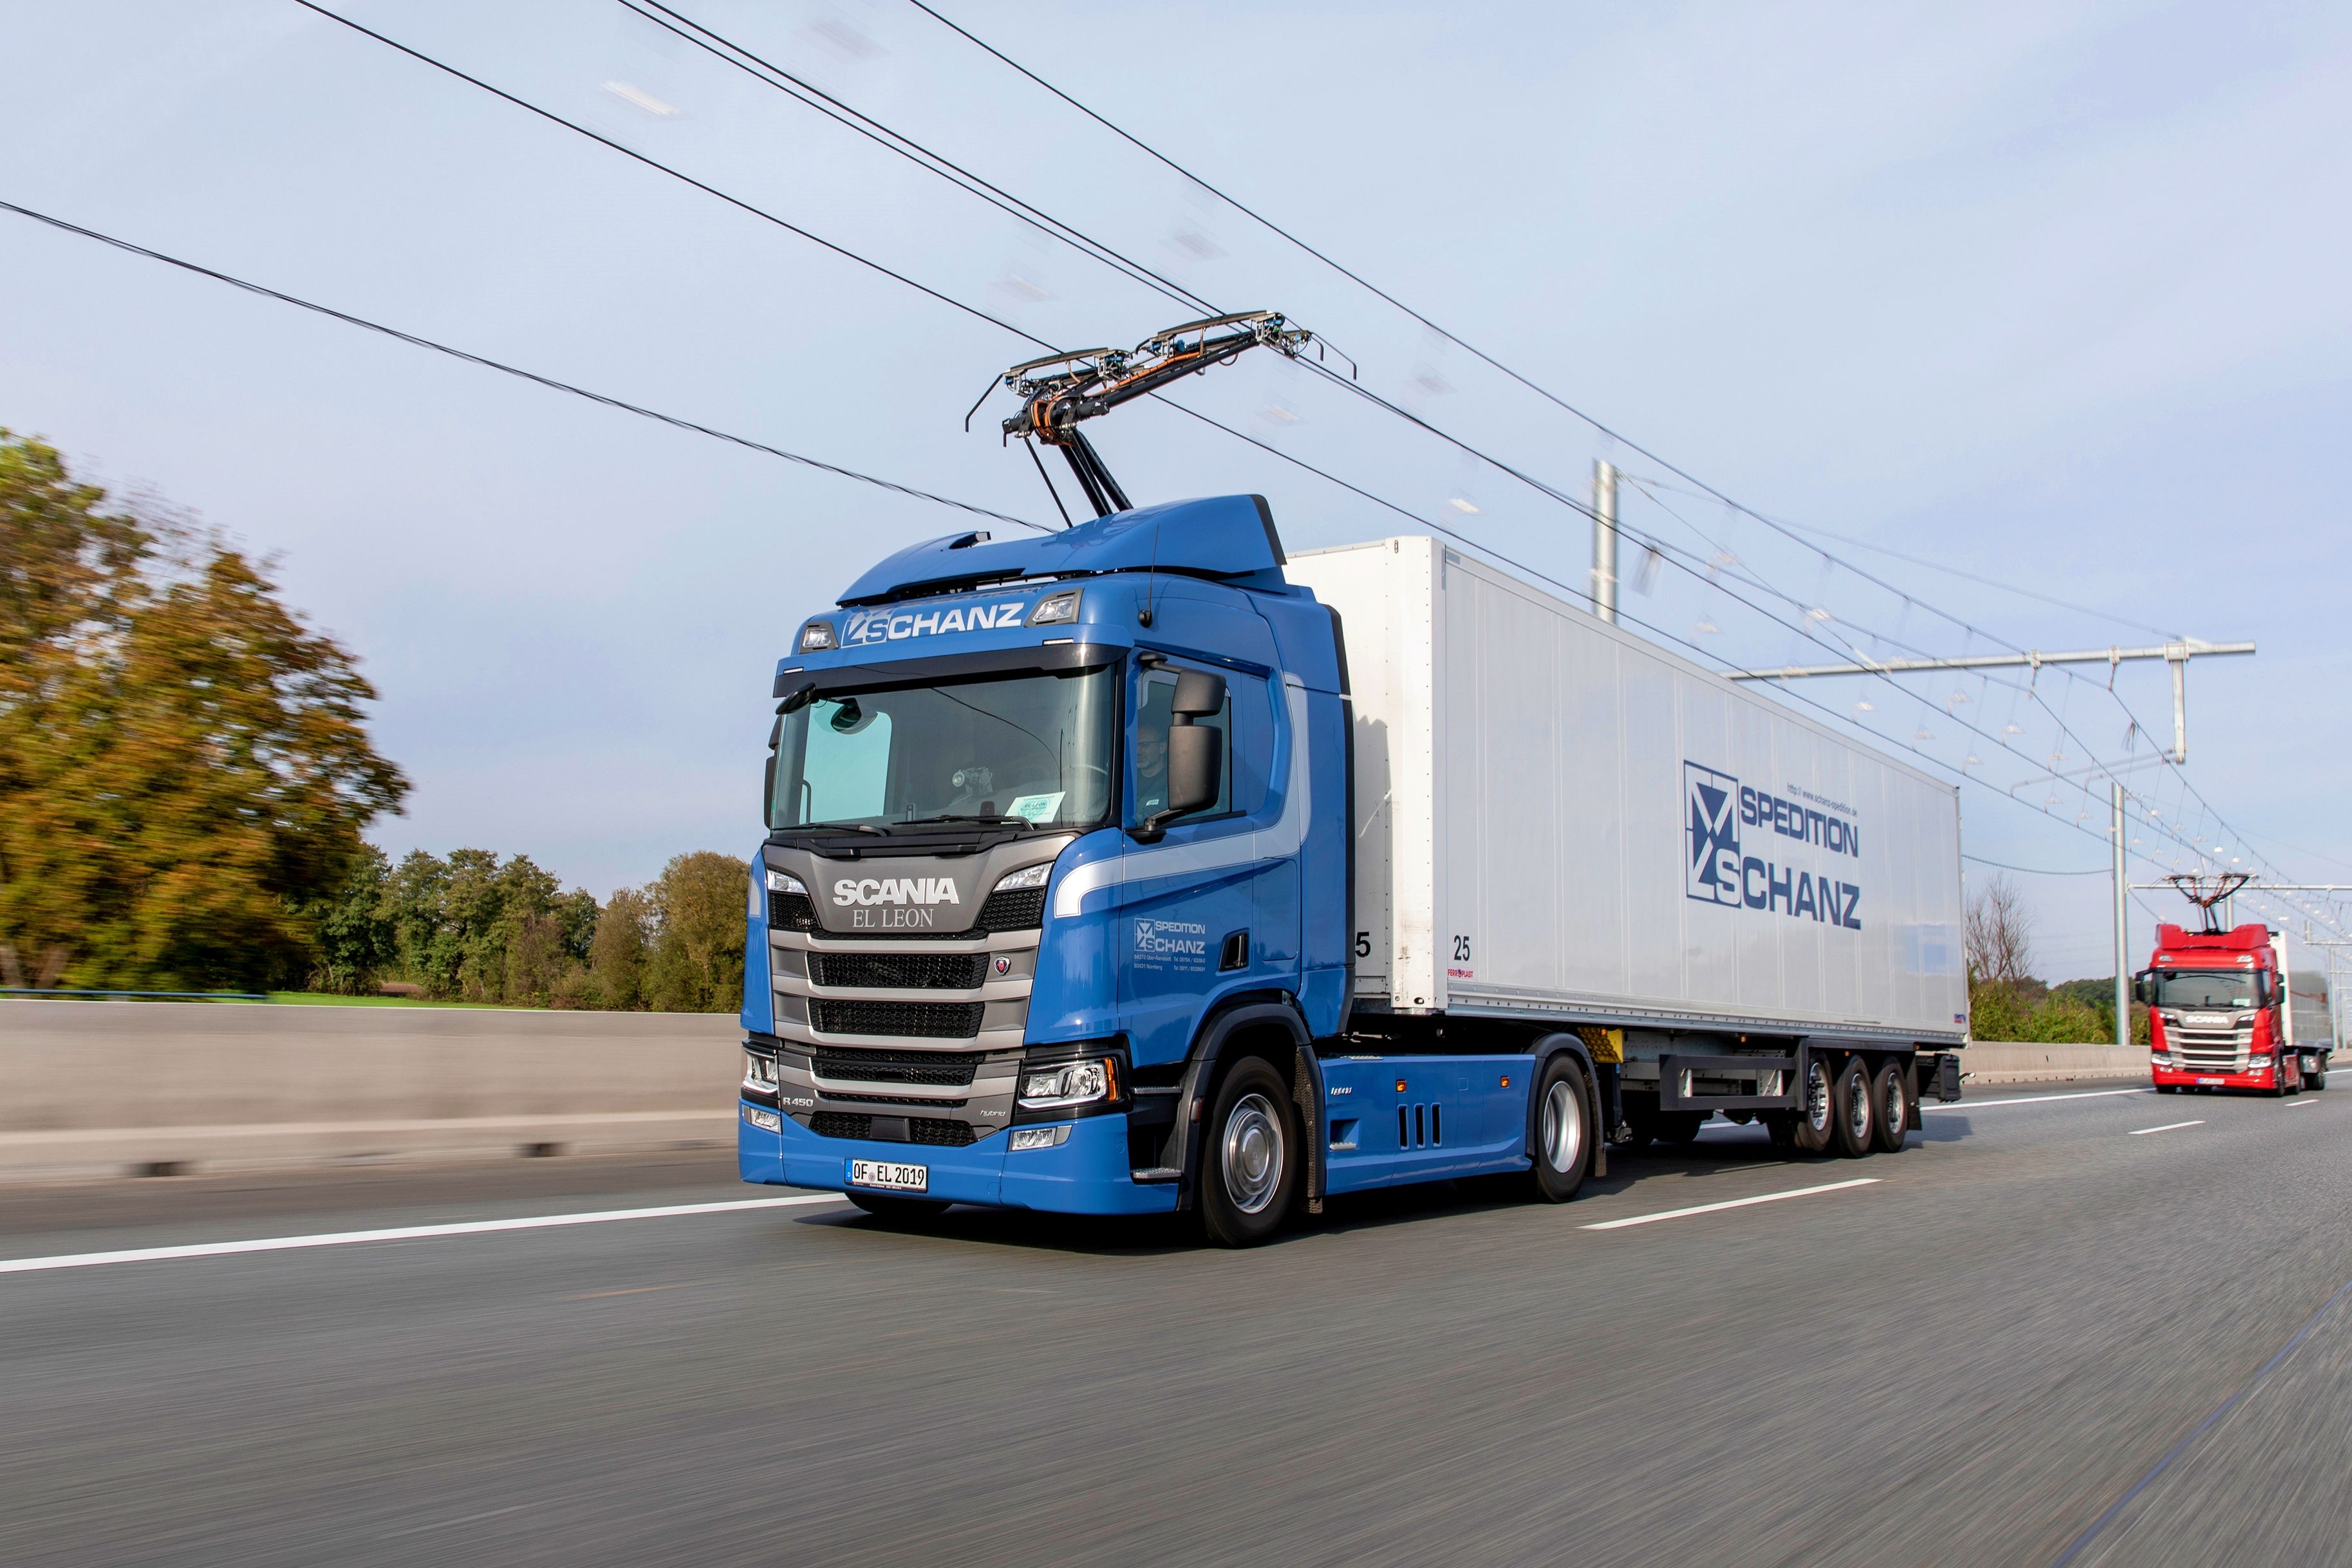 La carretera electrificada es un proyecto conjunto de Scania y Siemens, entre otros.